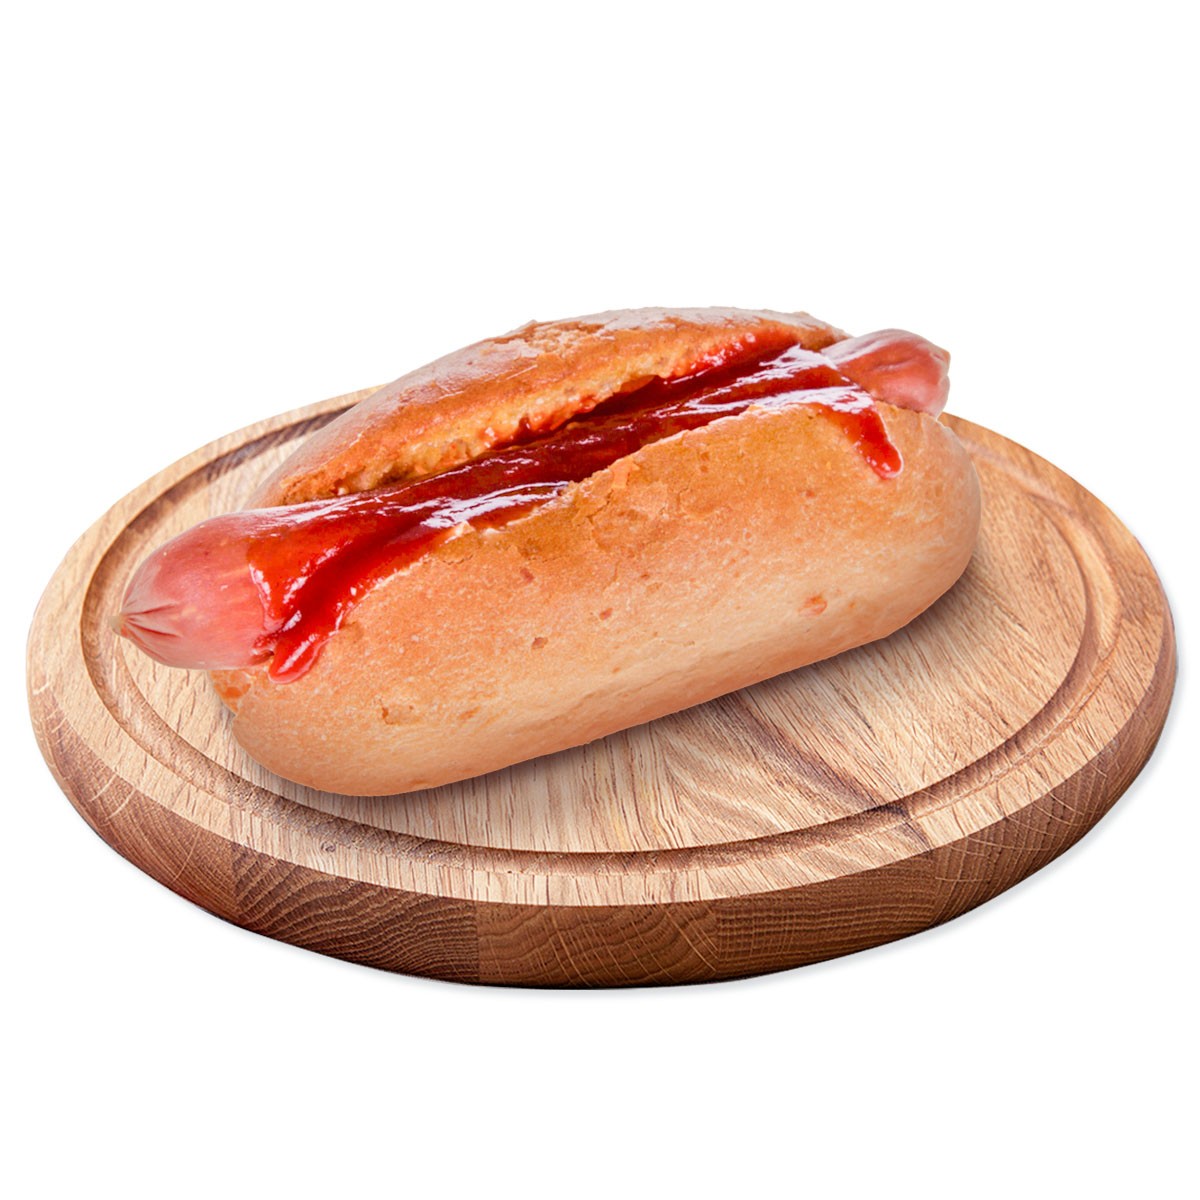 Хот-дог с полукопченой колбаской